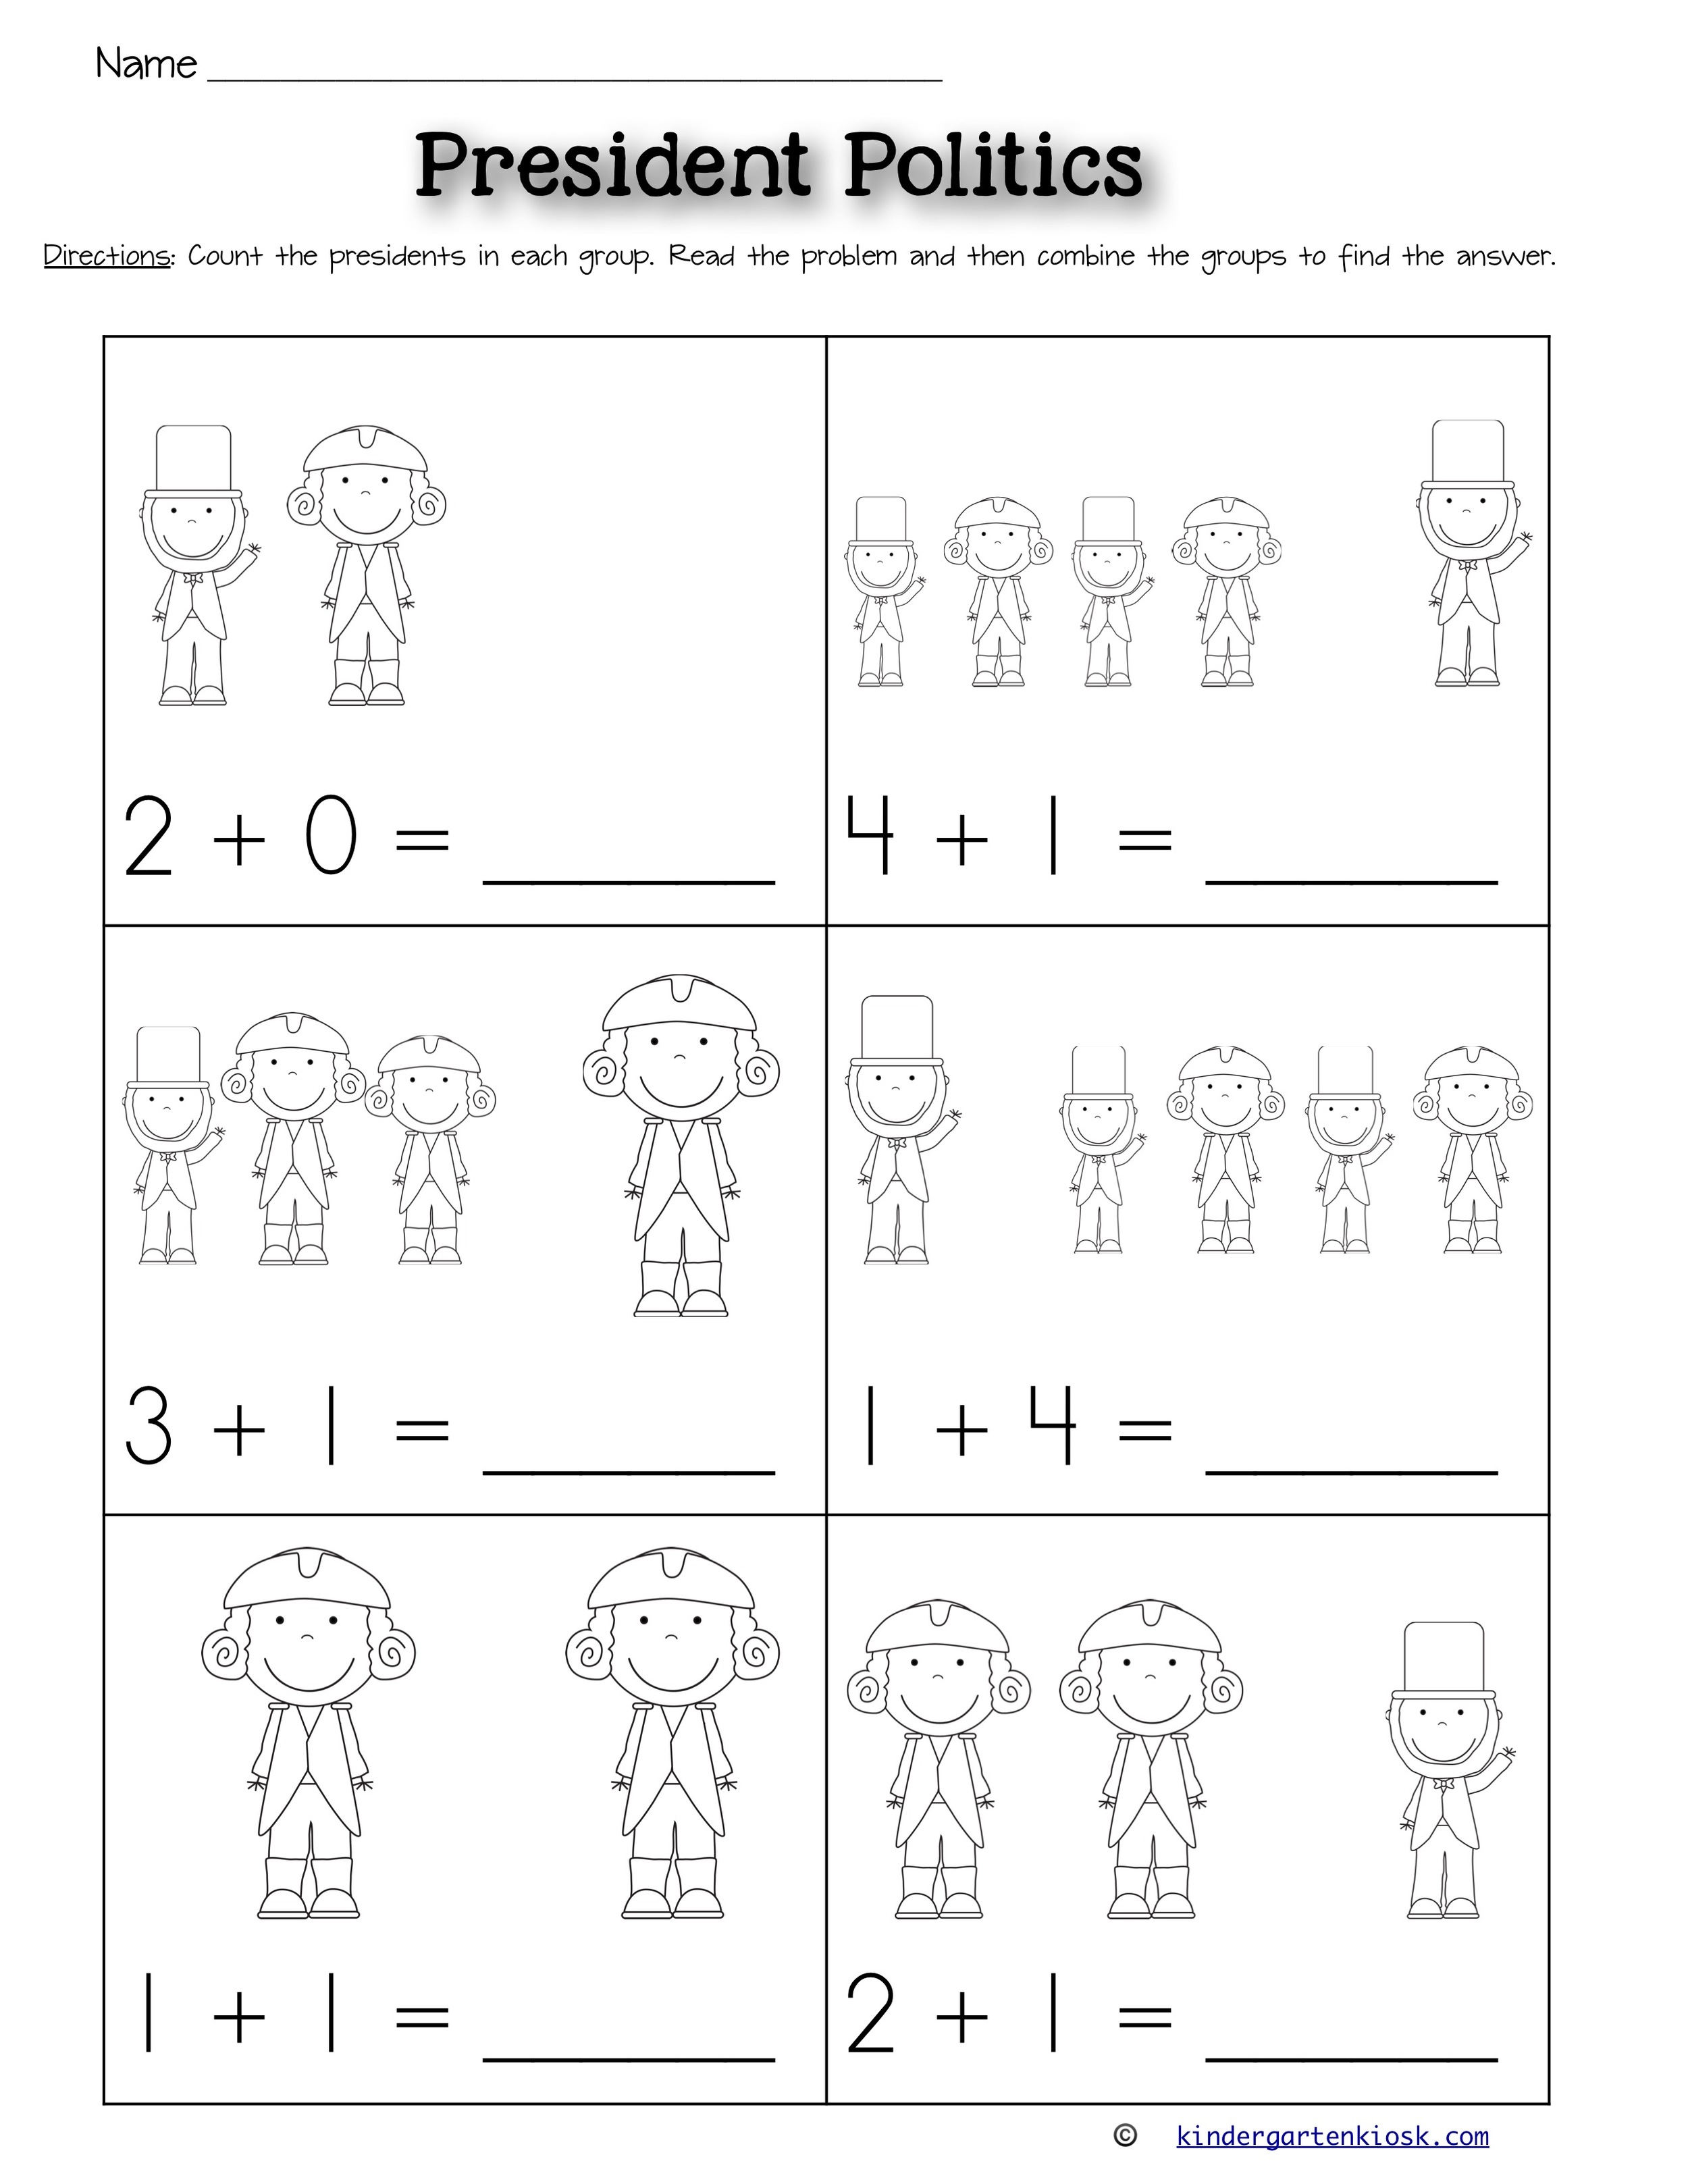 Addition 0-5 Worksheets: February — Kindergarten Kiosk